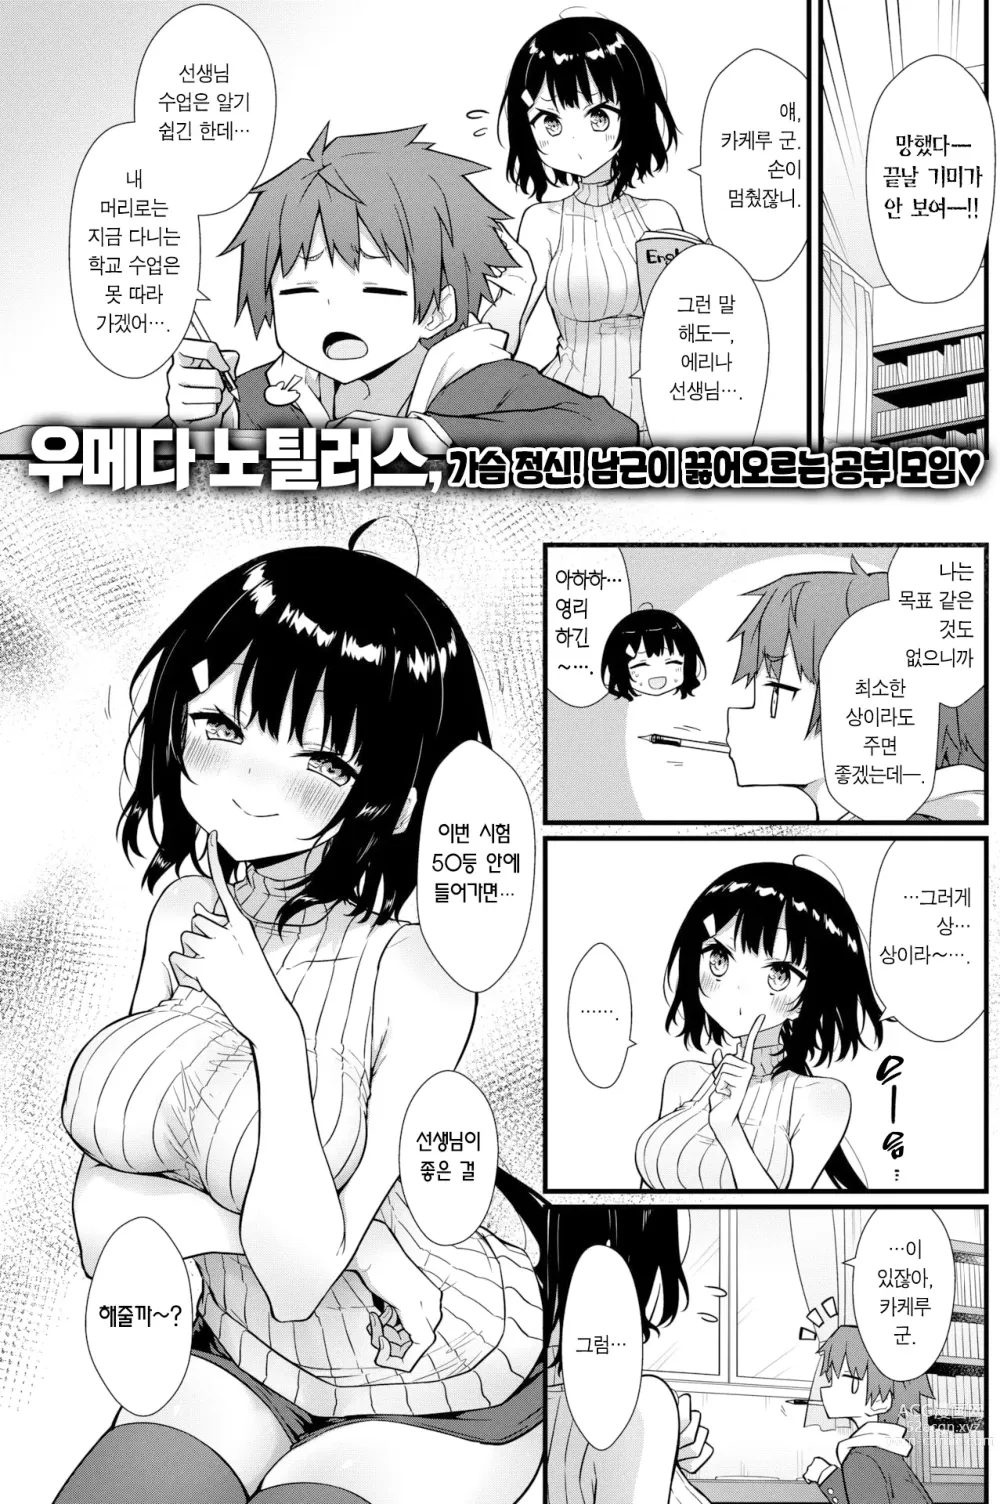 Page 2 of manga 선생님에게 듣는 약은 없다! (decensored)